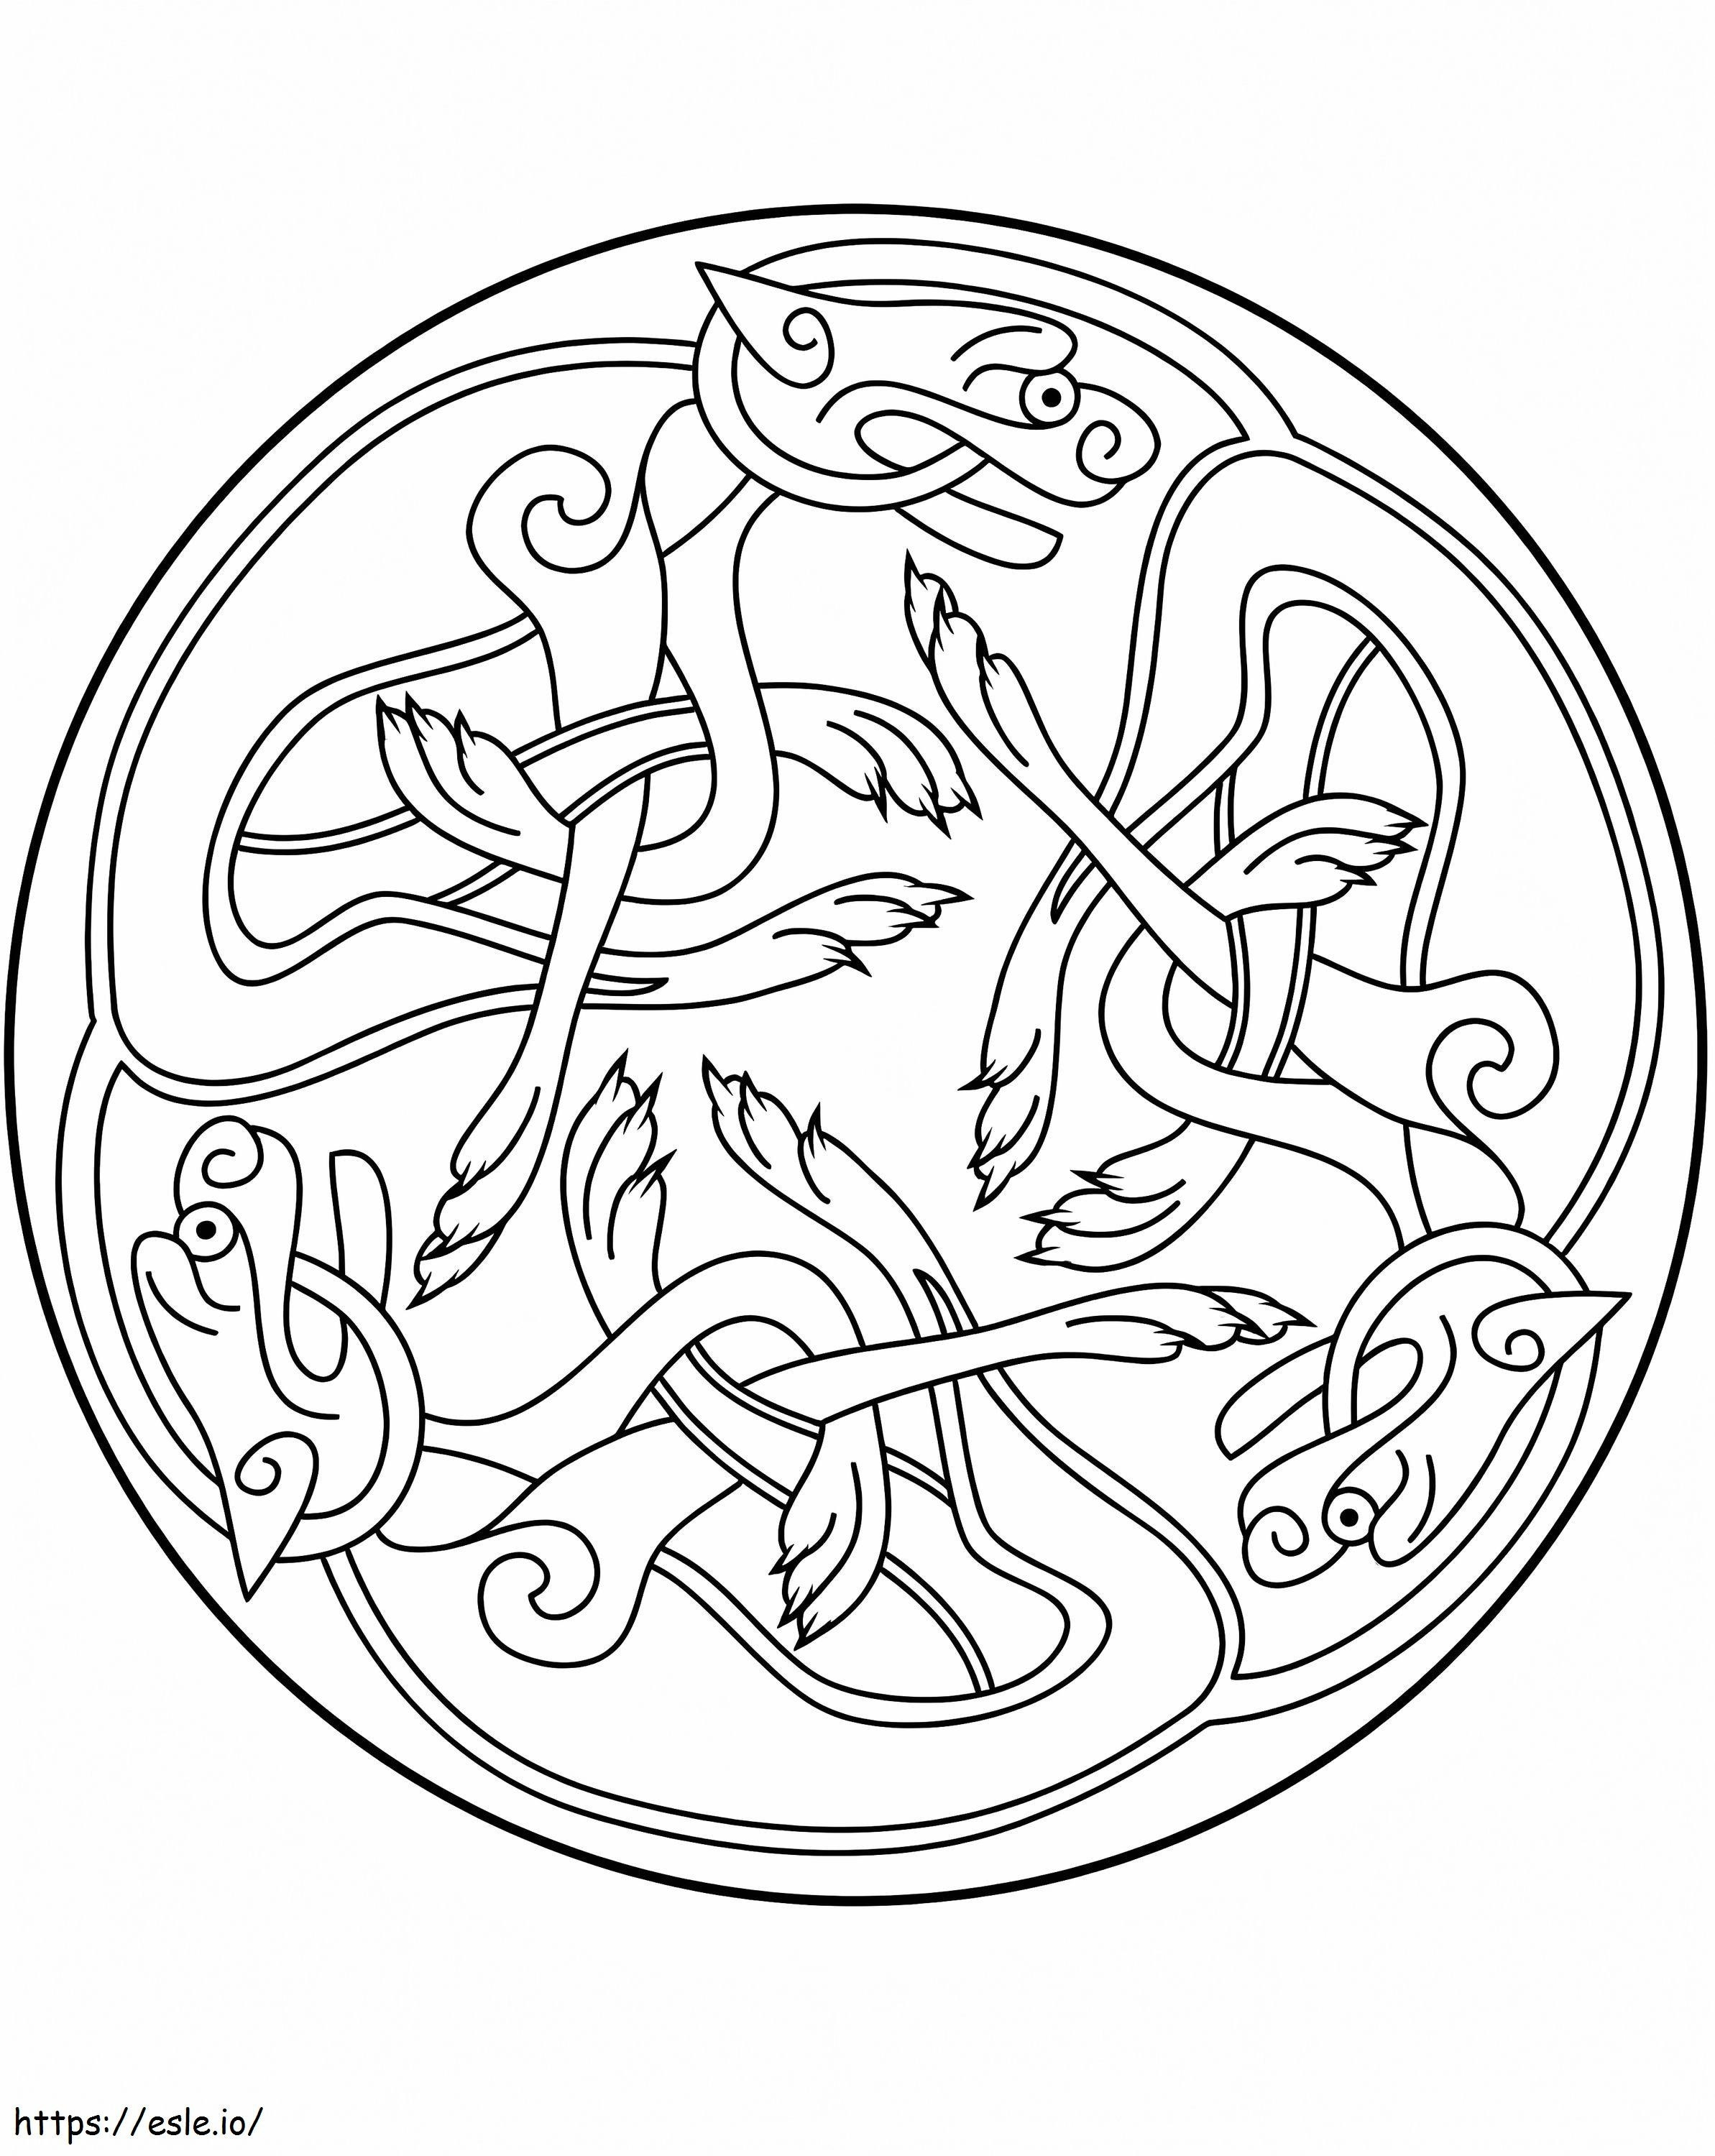 Disegno dell'ornamento celtico da colorare